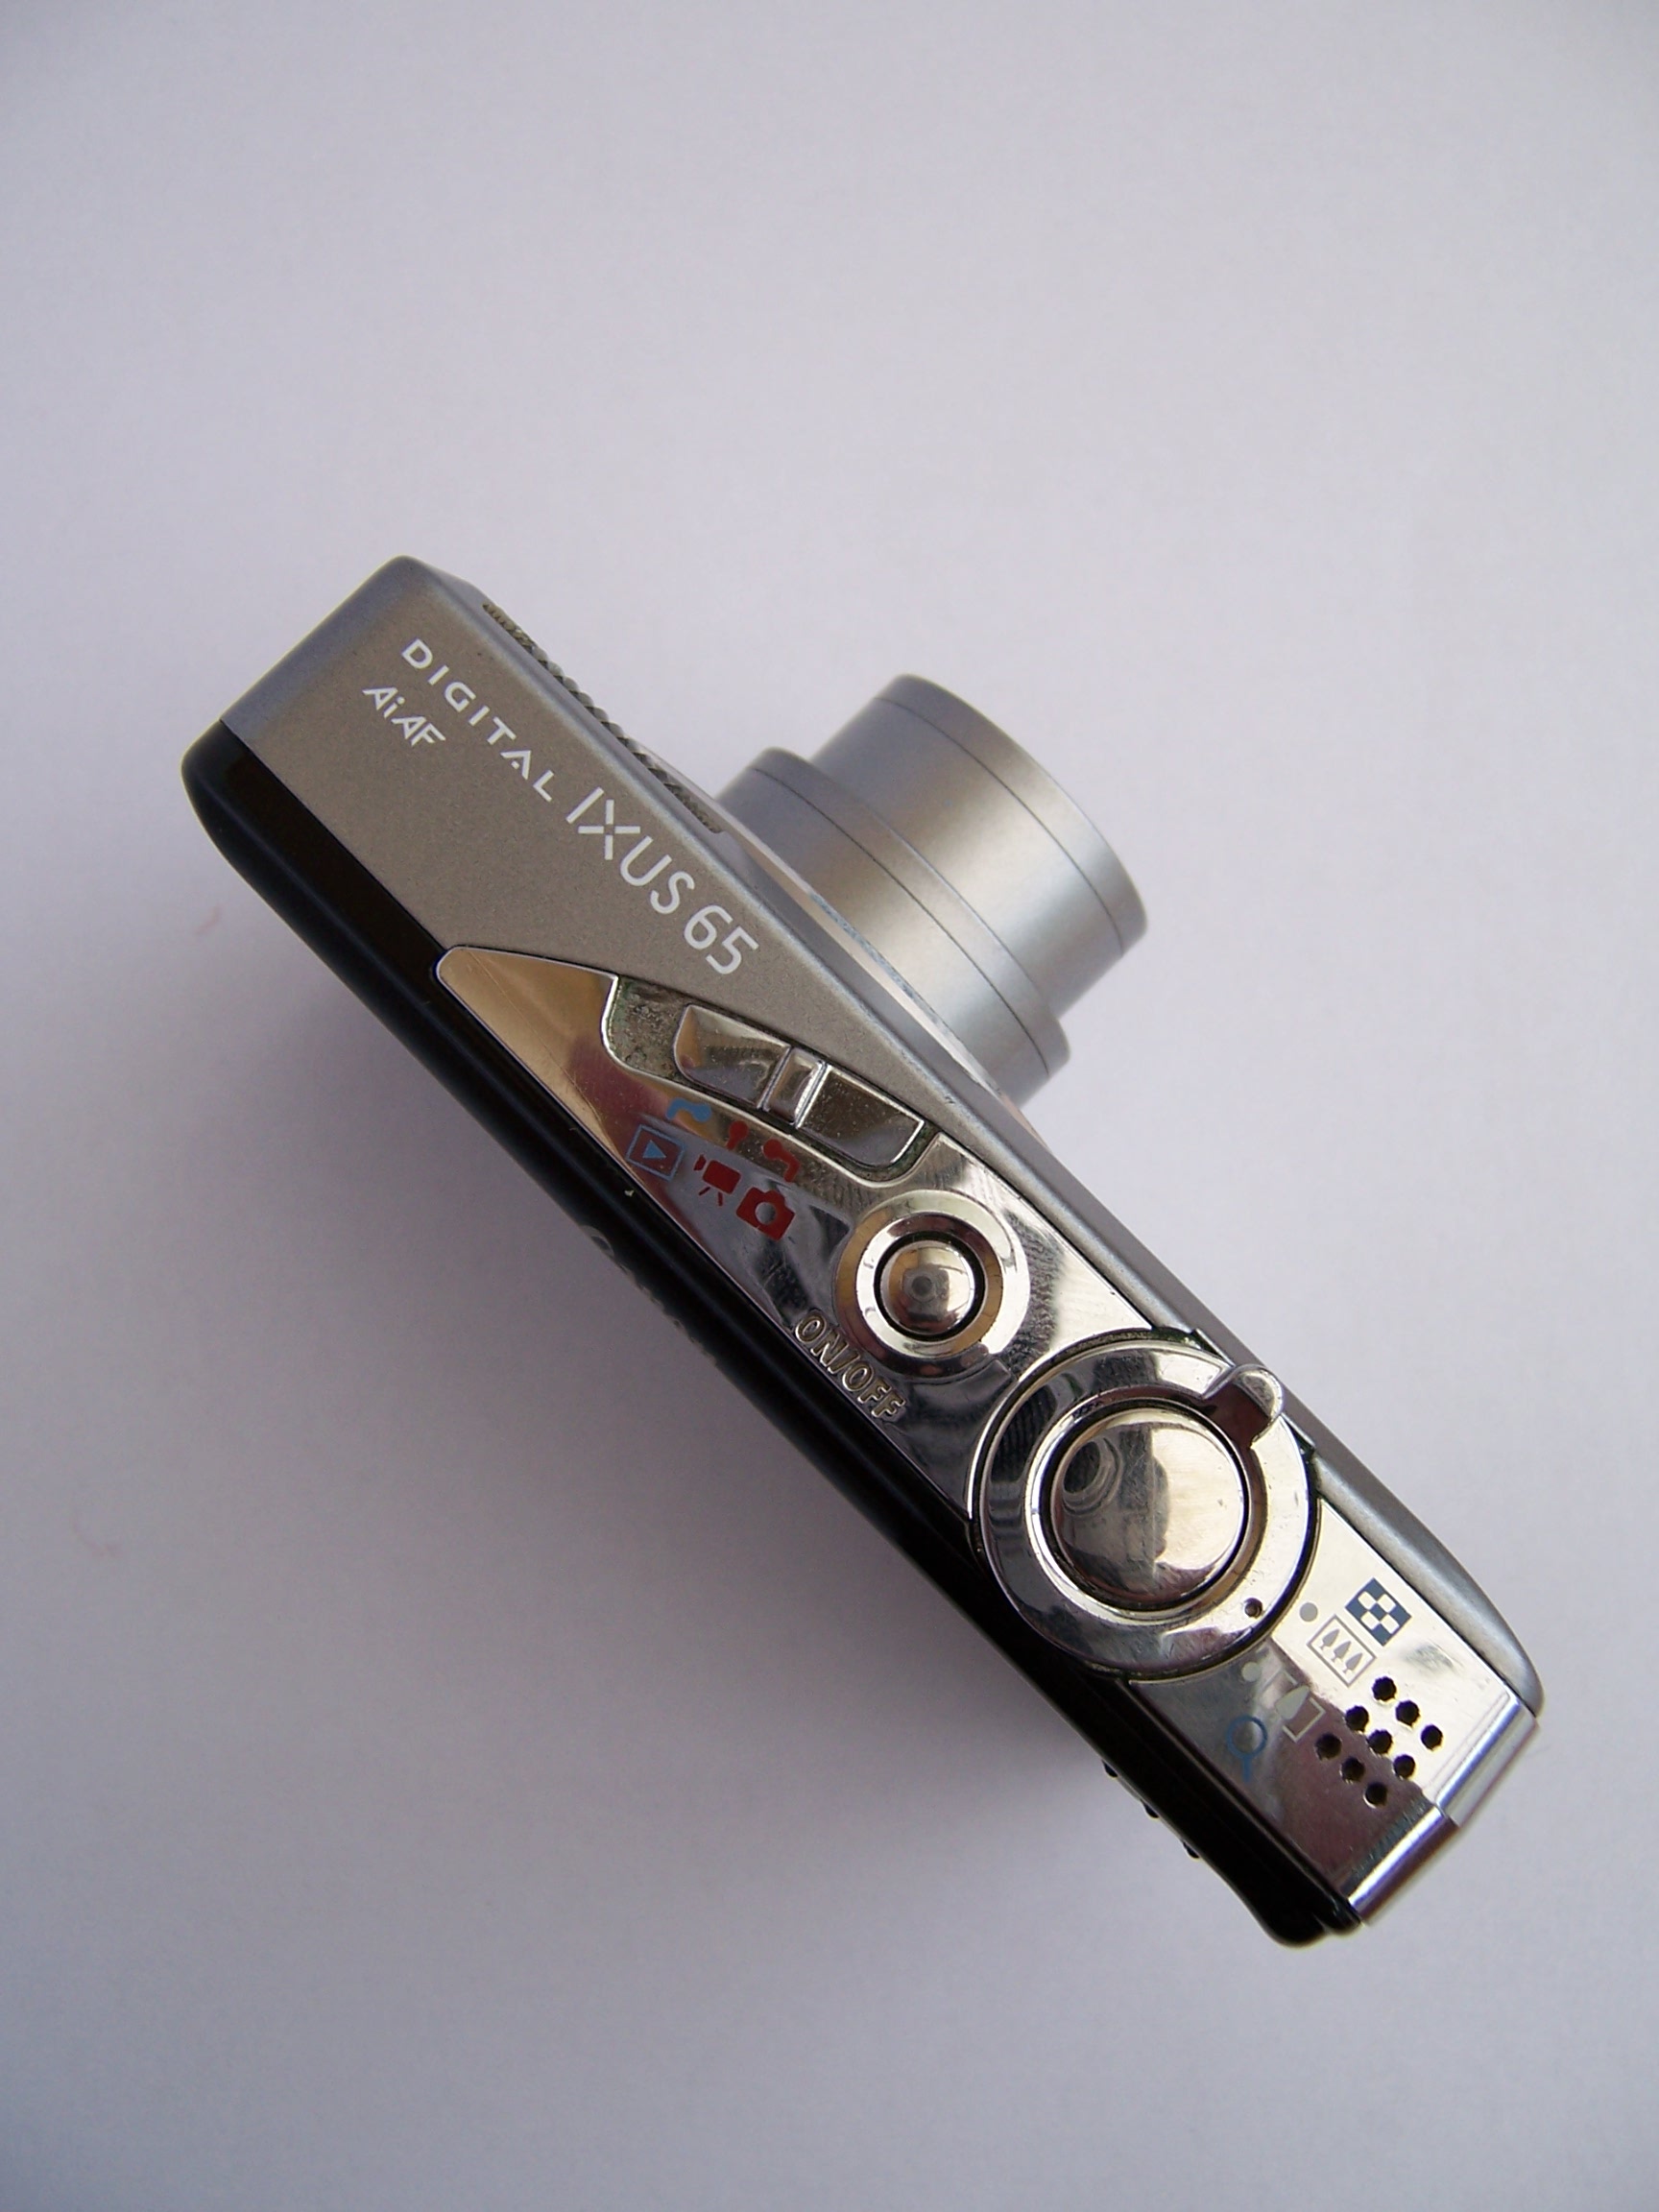 Canon IXUS II -  - The free camera encyclopedia